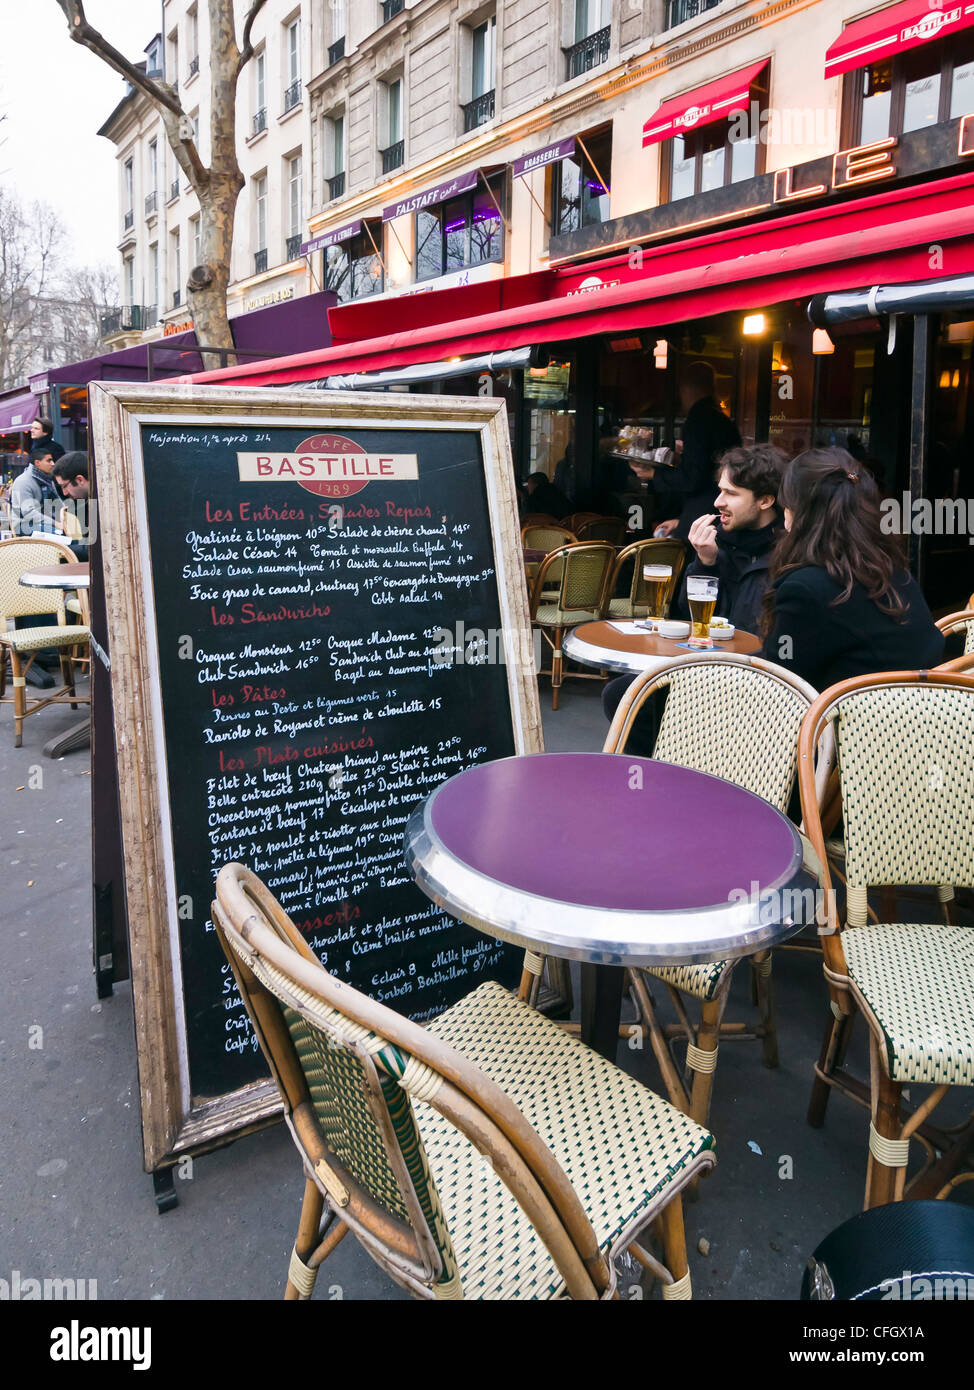 Les gens de prendre un verre à une terrasse de café - Bastille, Paris,  France Photo Stock - Alamy